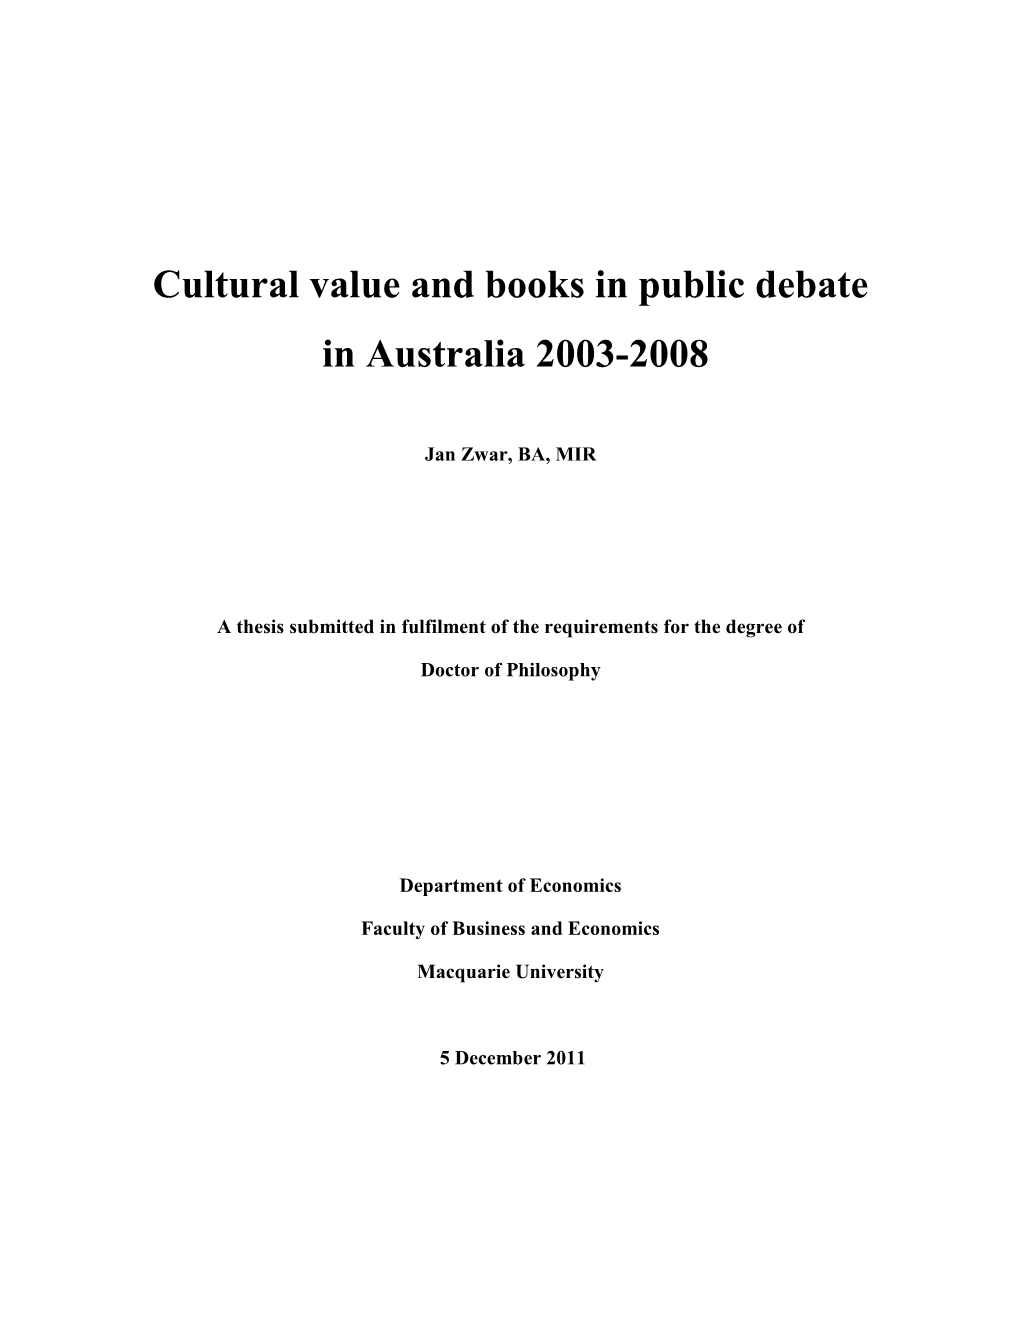 Cultural Value and Books in Public Debate in Australia 2003-2008